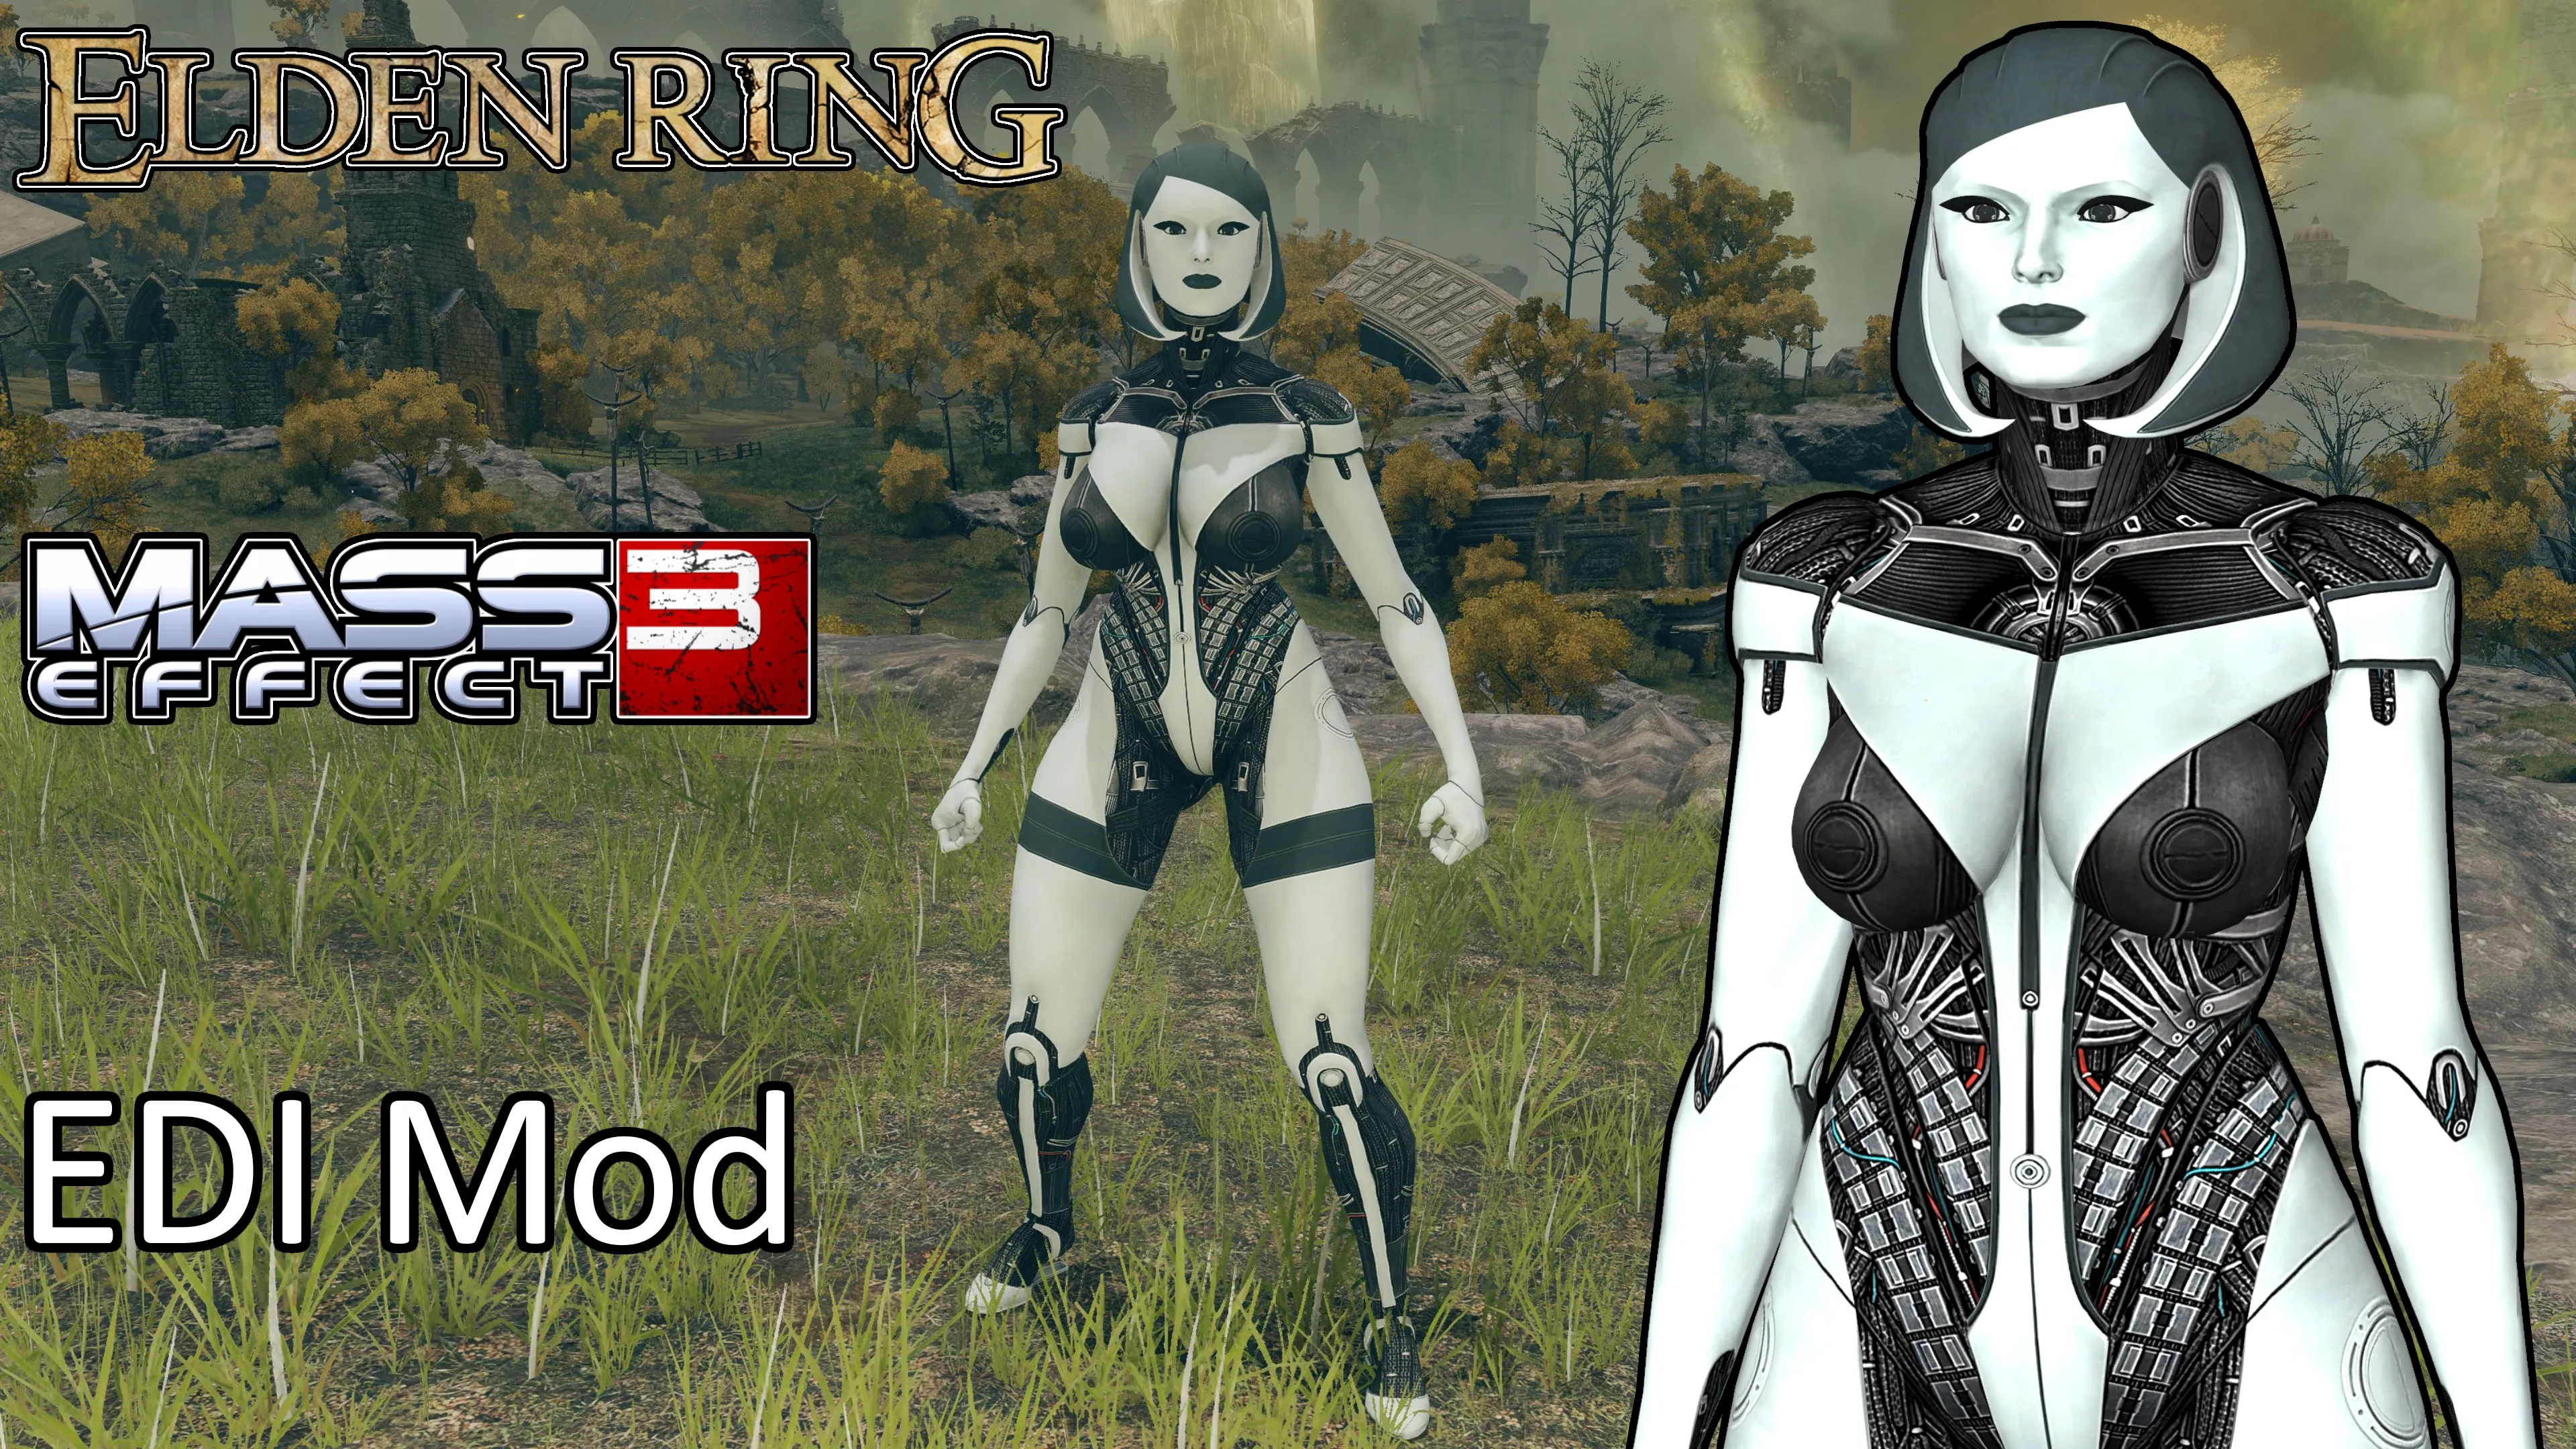 Mass Effect's EDI standing in a field in Elden Ring